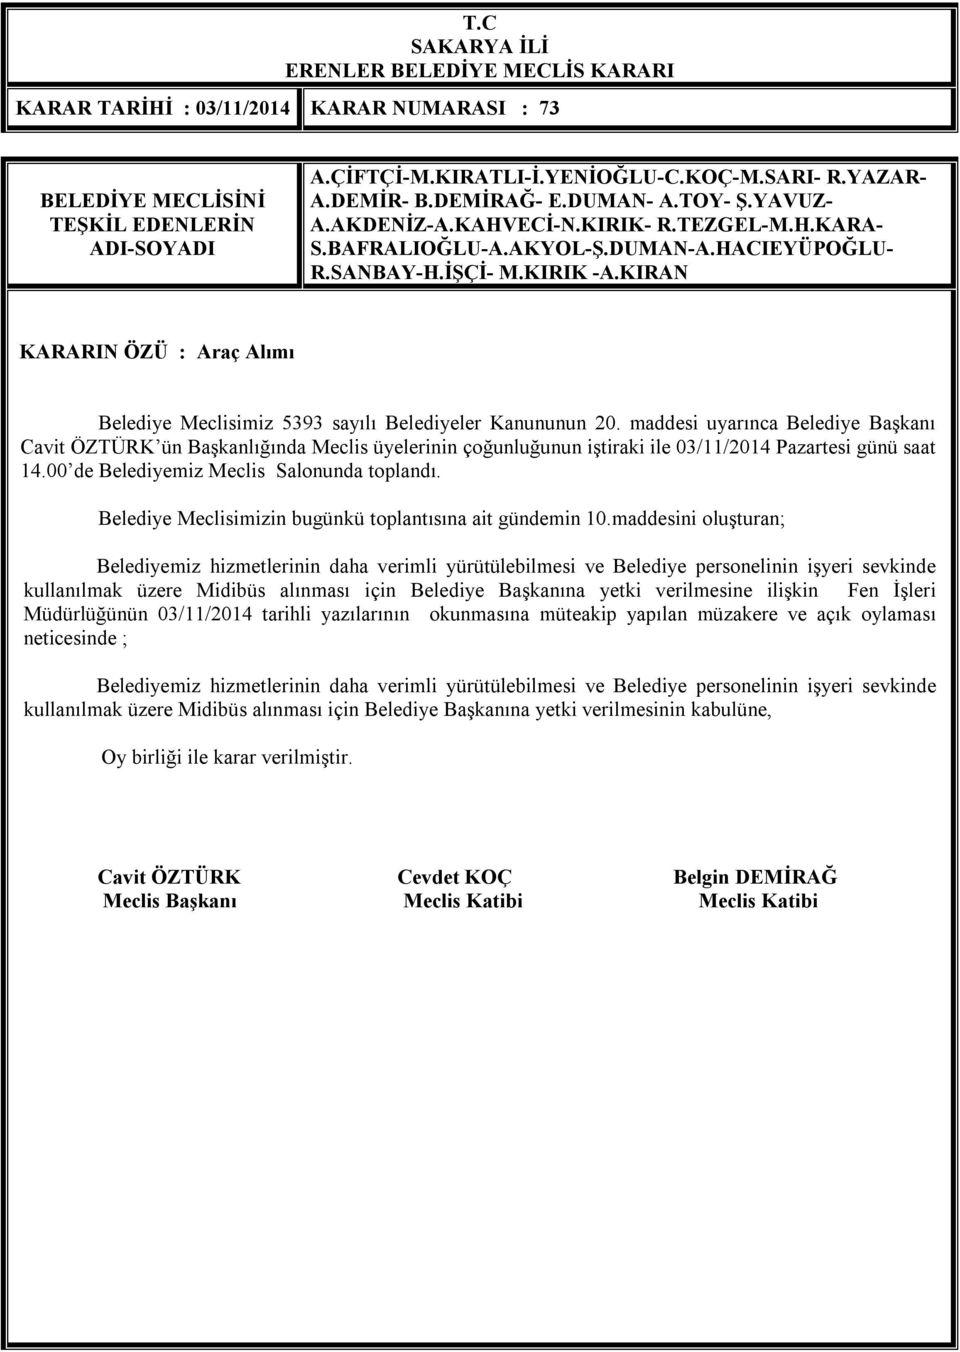 Belediye Başkanına yetki verilmesine ilişkin Fen İşleri Müdürlüğünün 03/11/2014 tarihli yazılarının okunmasına müteakip yapılan müzakere ve açık oylaması